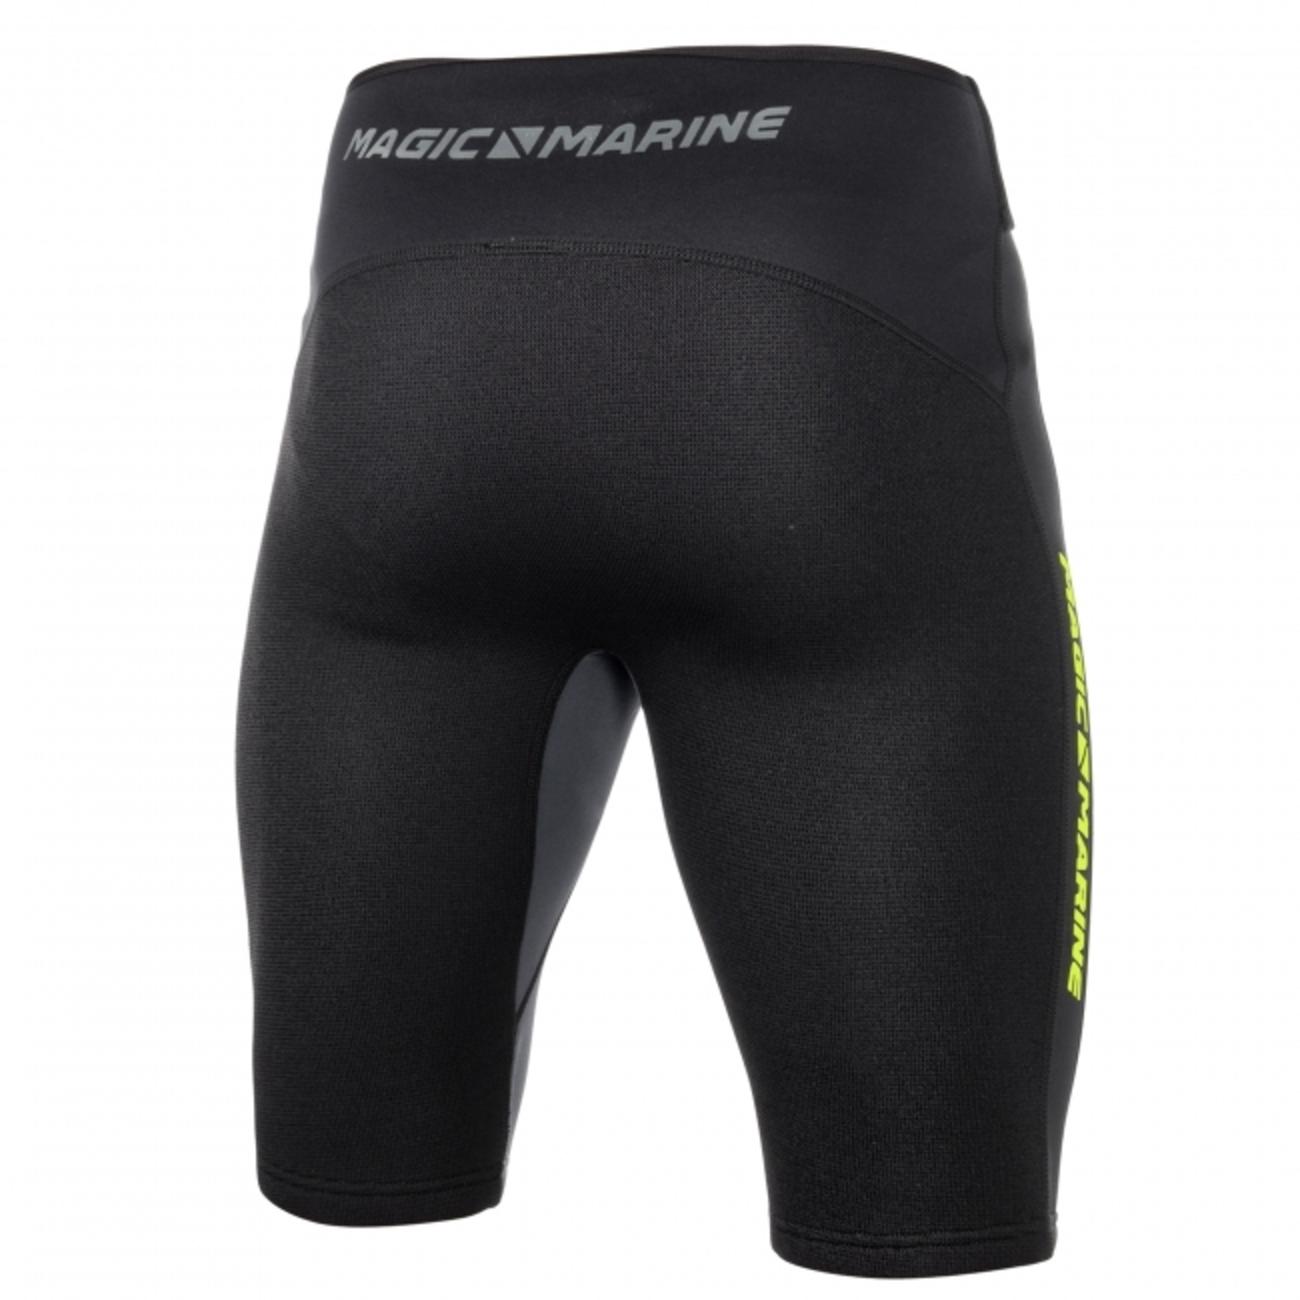 Ultimate Shorts Neoprene 2mm ウエストベルト付きウェットパンツ